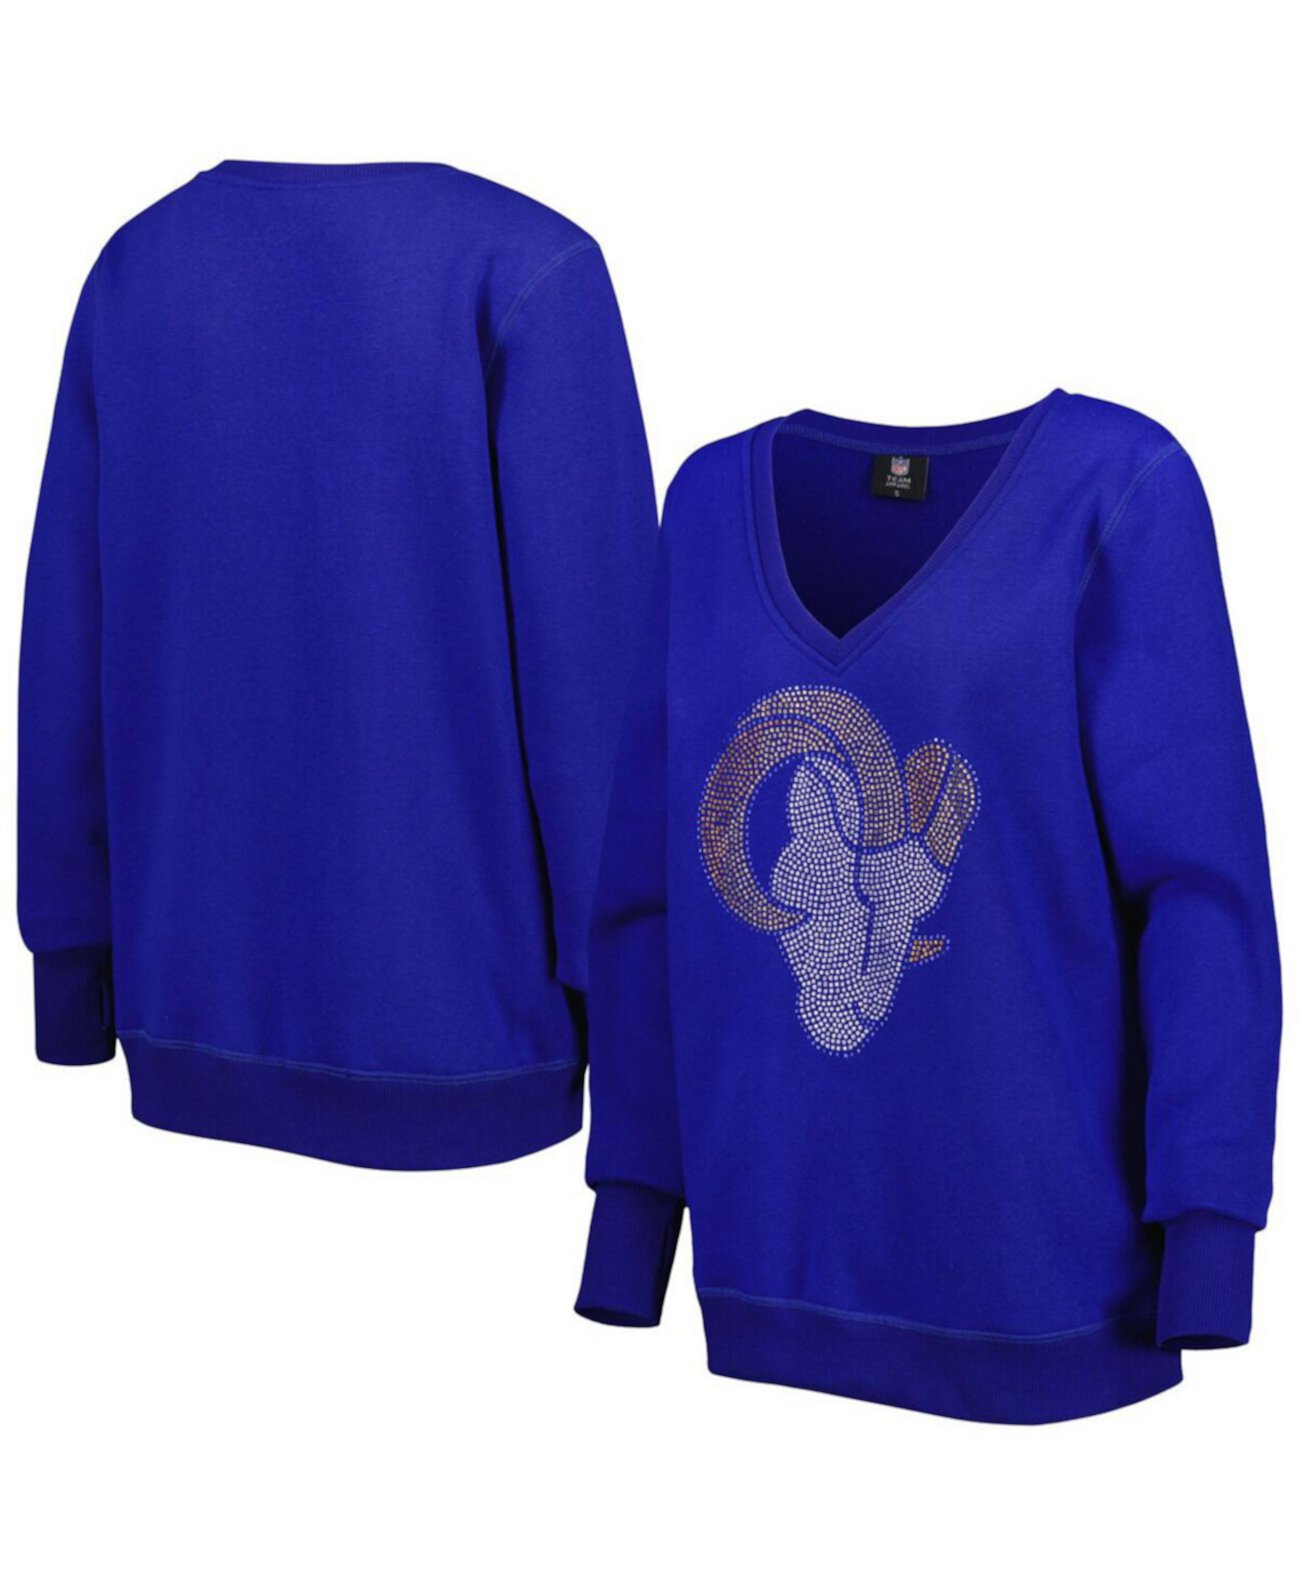 Женский пуловер с глубоким v-образным вырезом Royal Los Angeles Rams Cuce